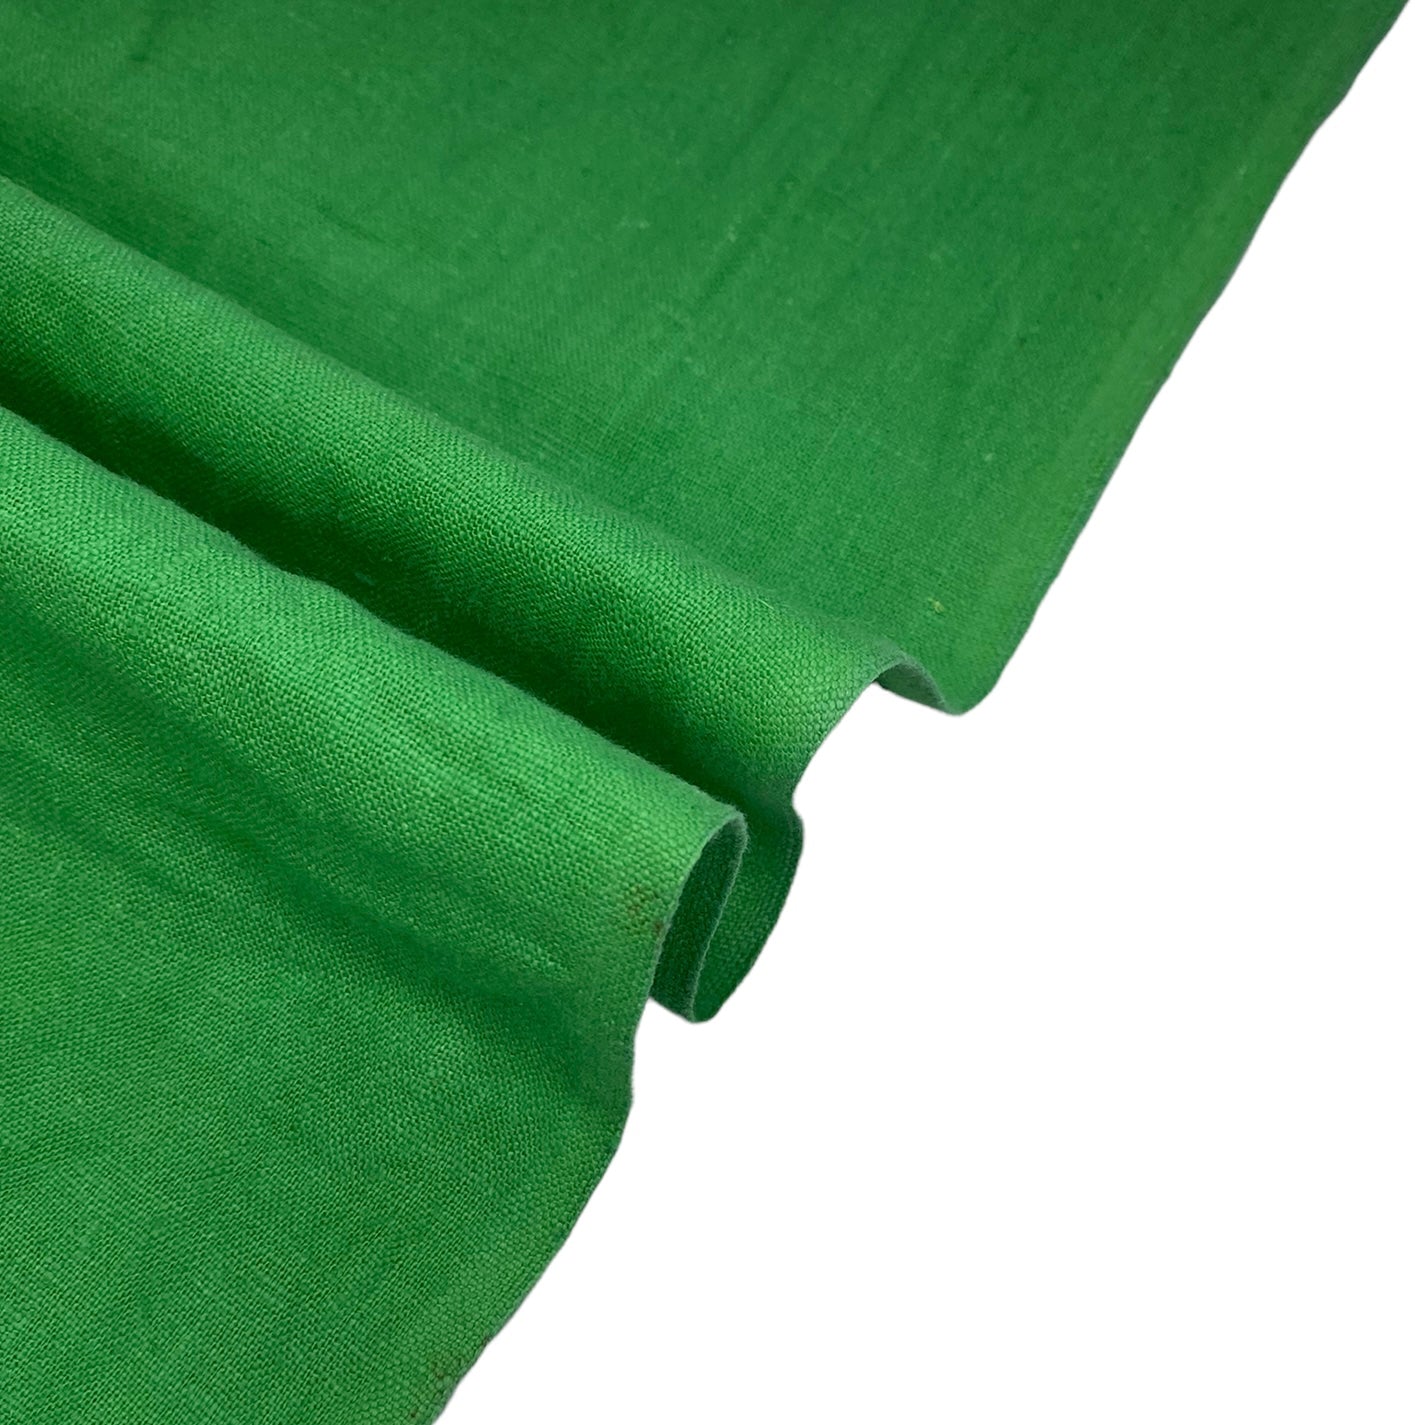 Cotton/Linen Blend - Green